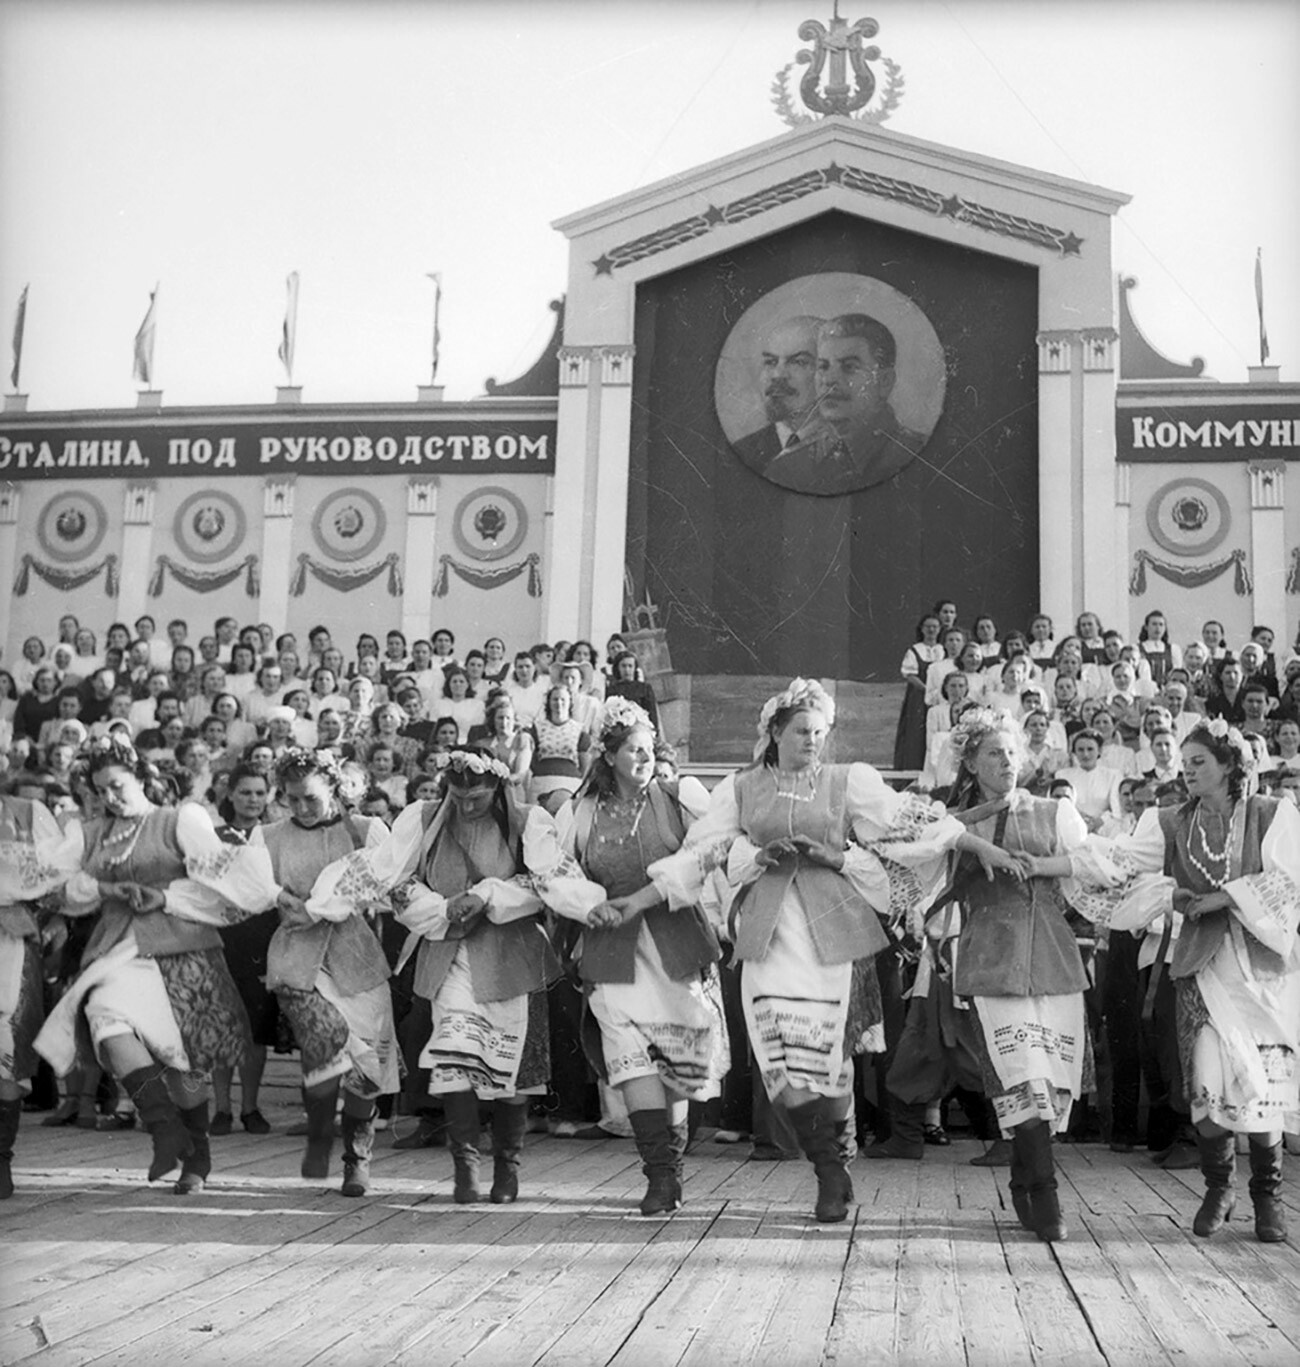 Harvest holiday in Krasnodar, 1953